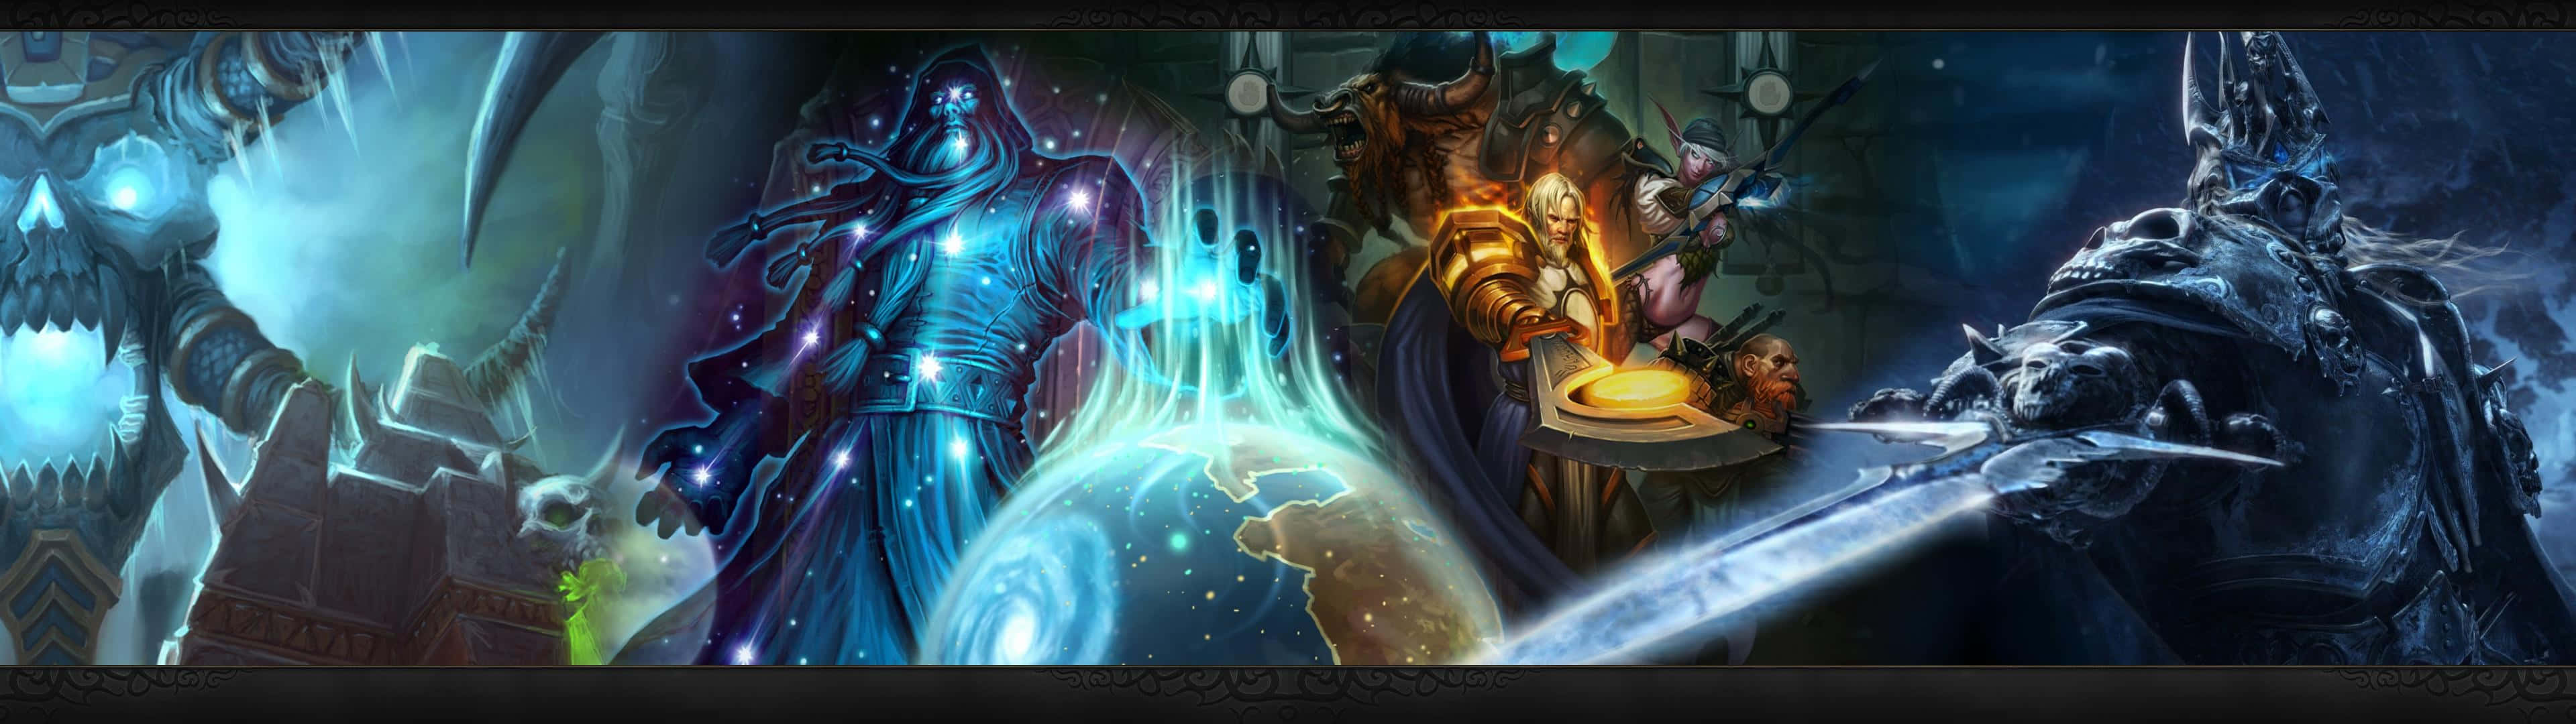 Warcraft 2 Banner Wallpaper